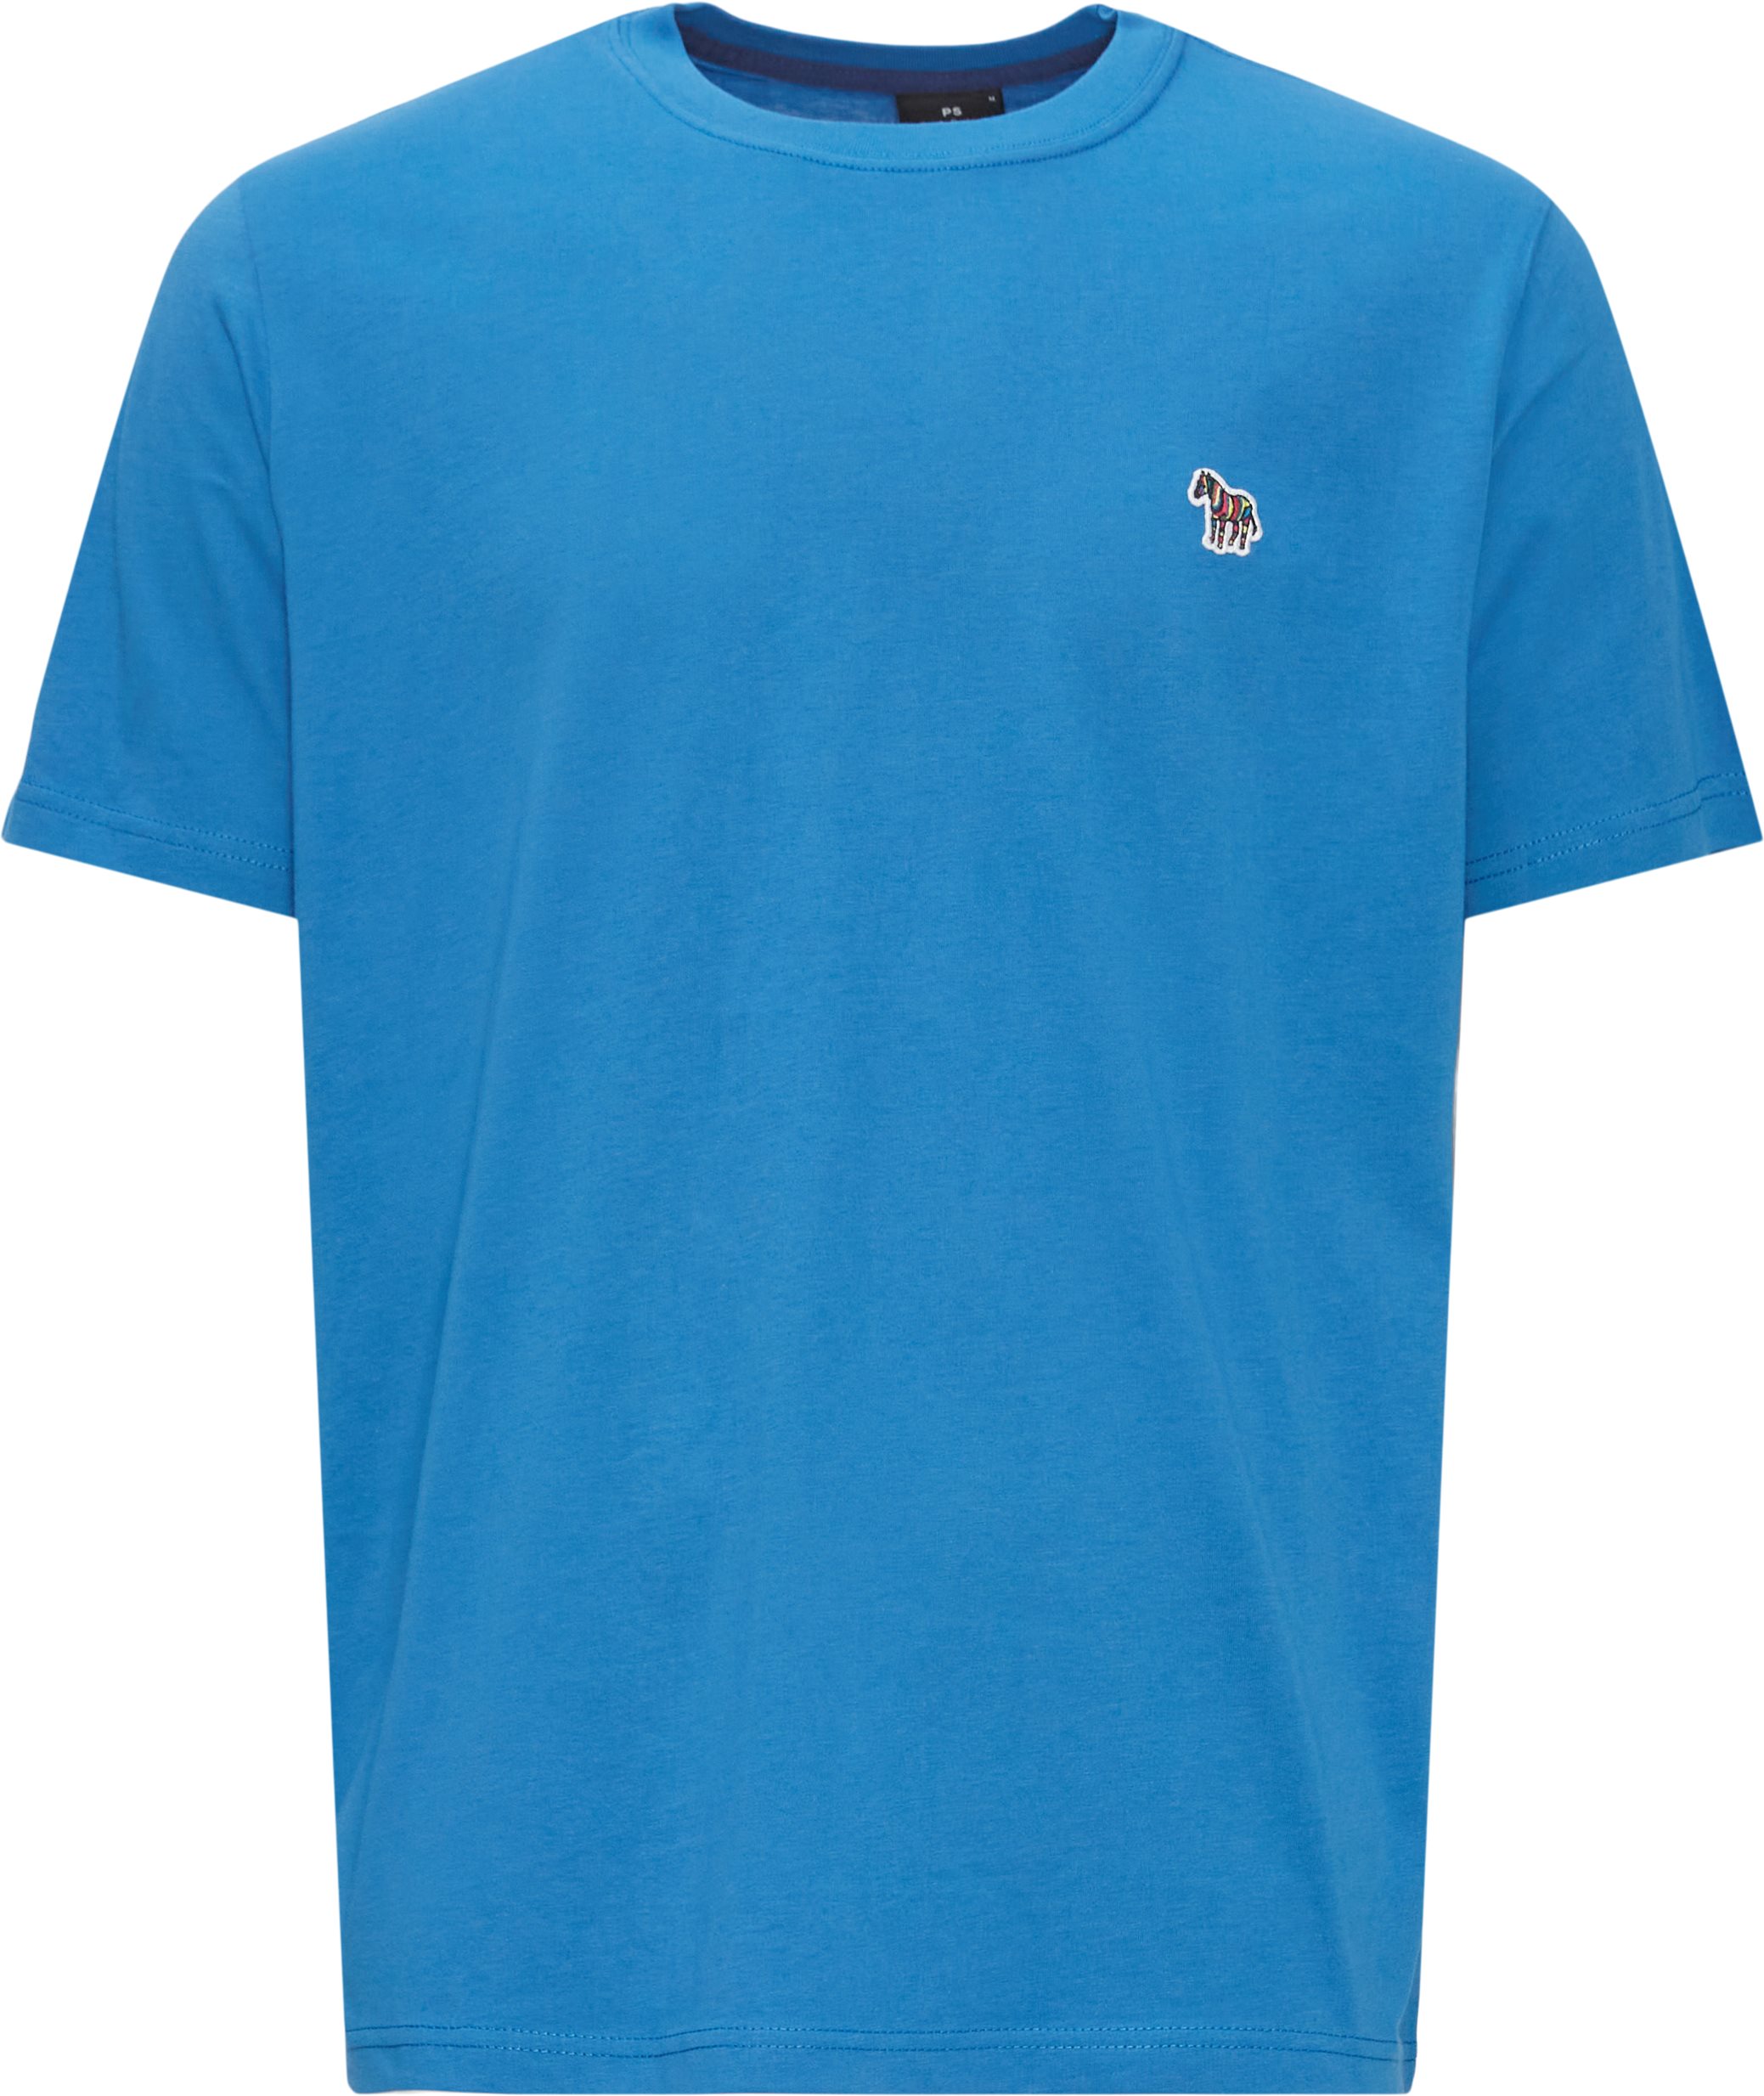 Zebra Badge T-shirt - T-shirts - Regular fit - Blå